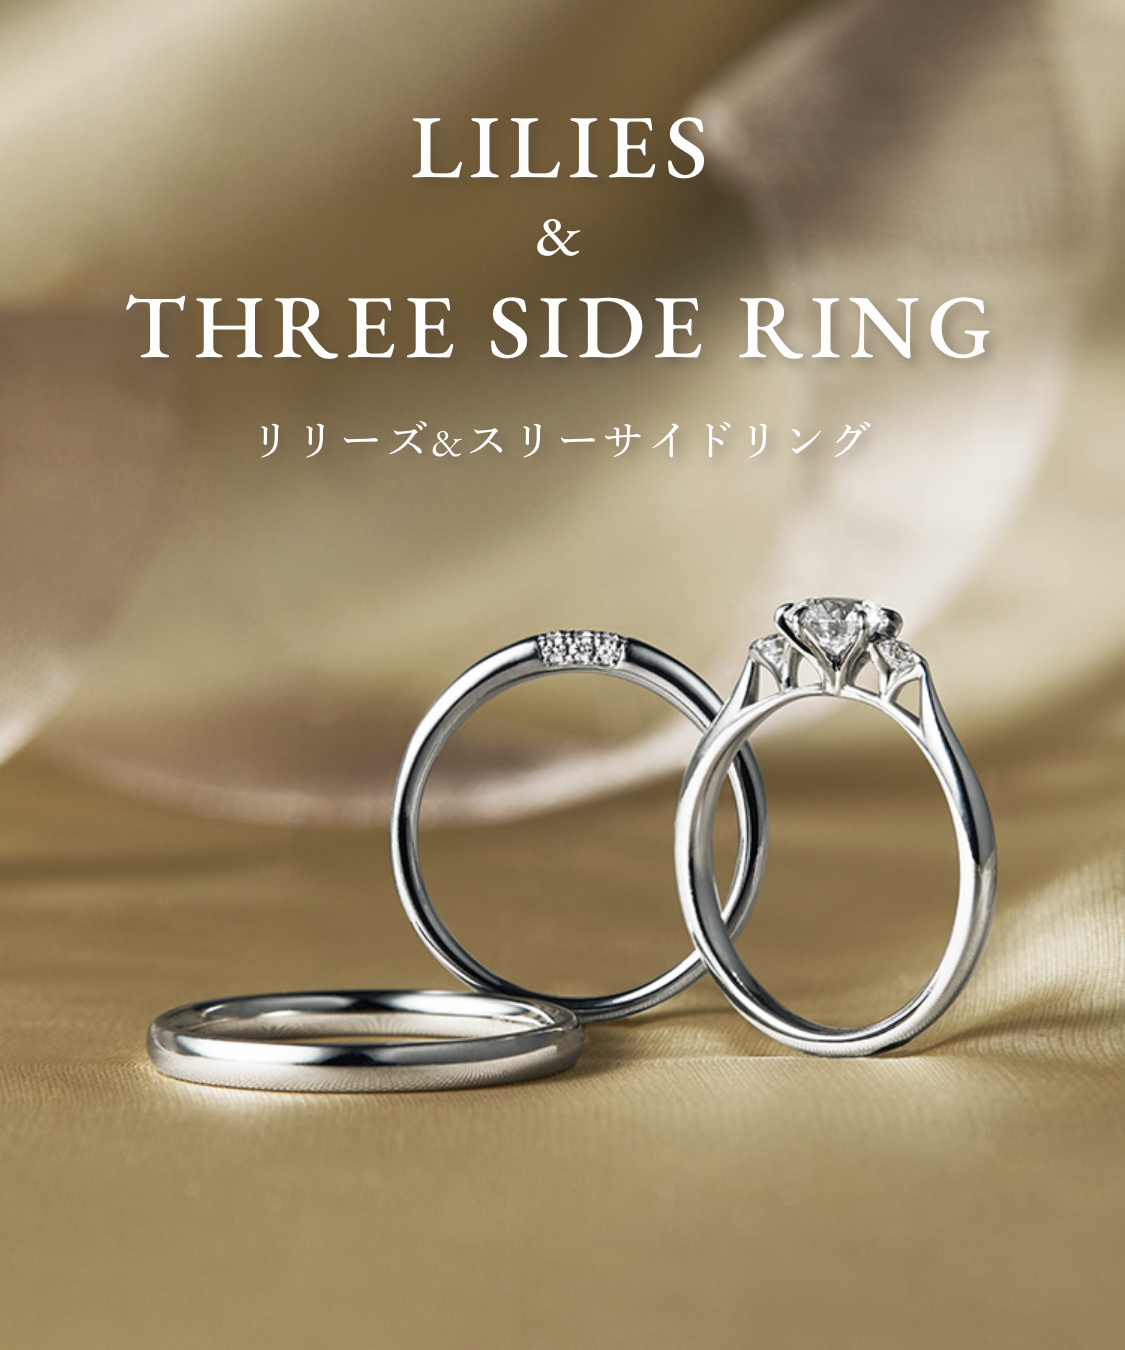 ラザールダイヤモンド『LILIES & THREE SIDE RING』 – EYE EYE ISUZU